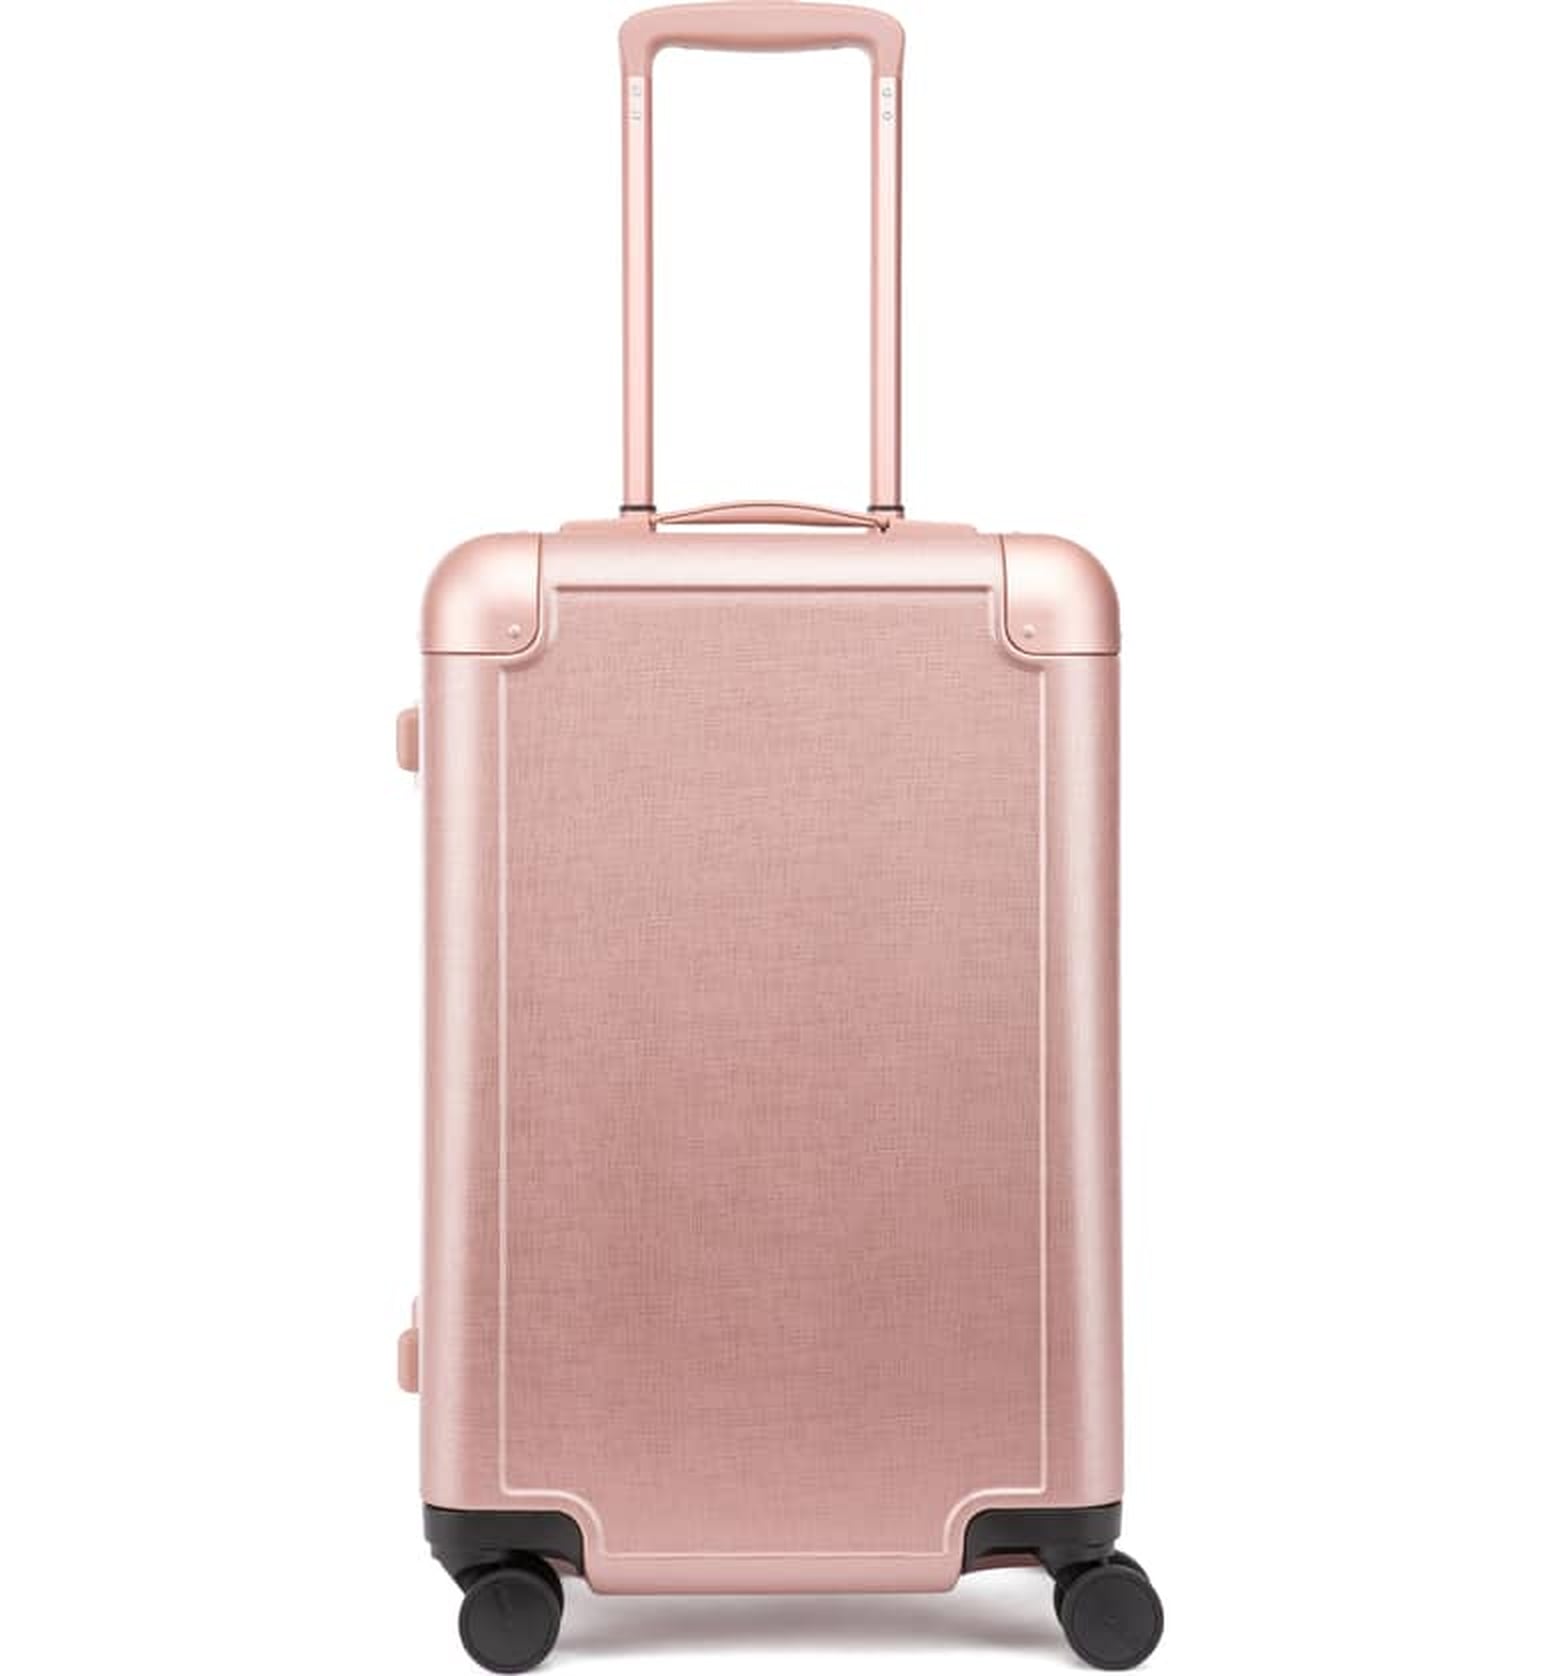 Best Travel Bags for Women | POPSUGAR Smart Living